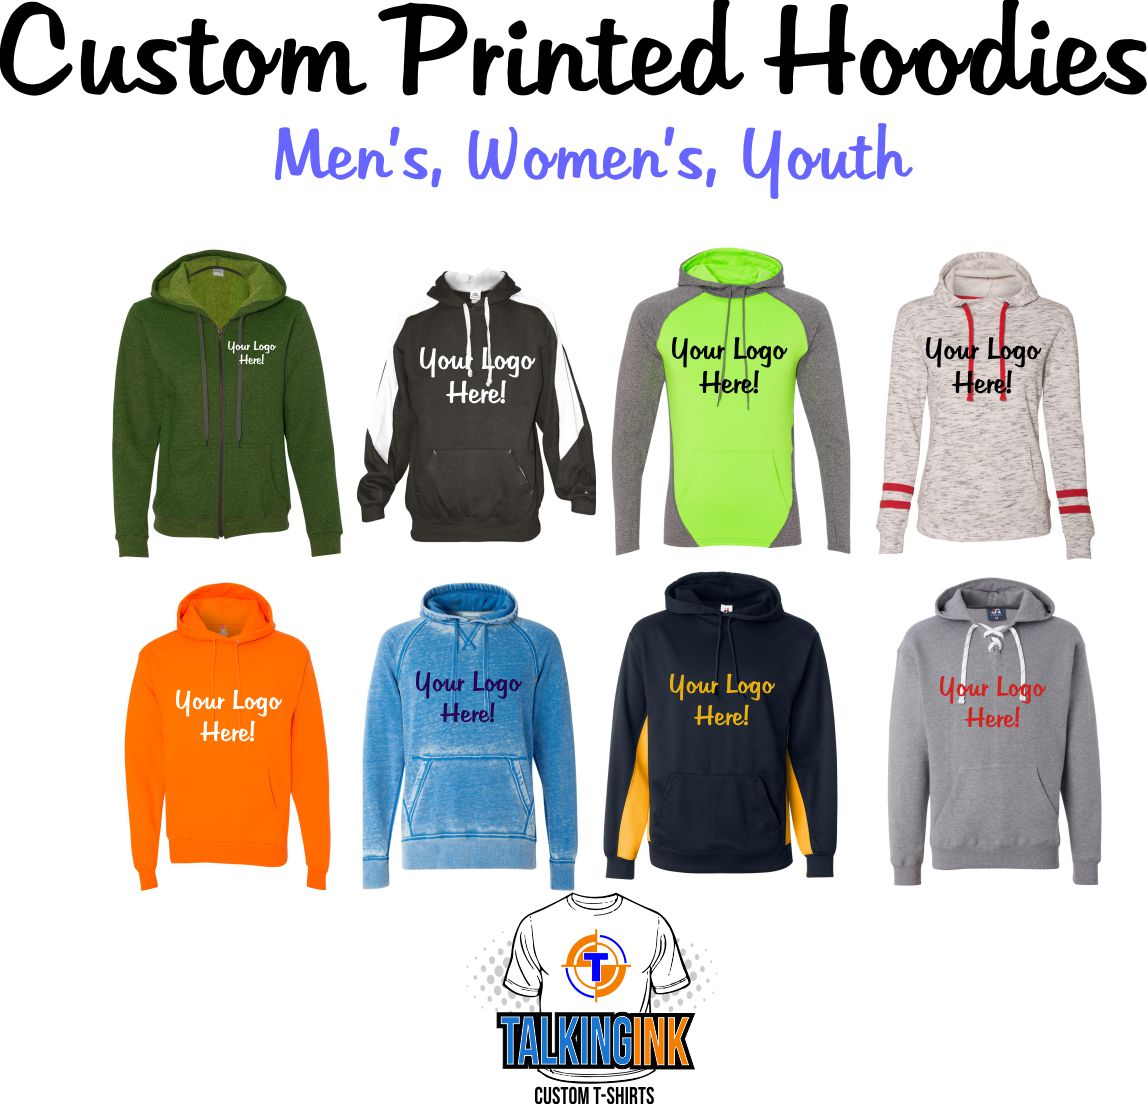 Custom printed Hoodies